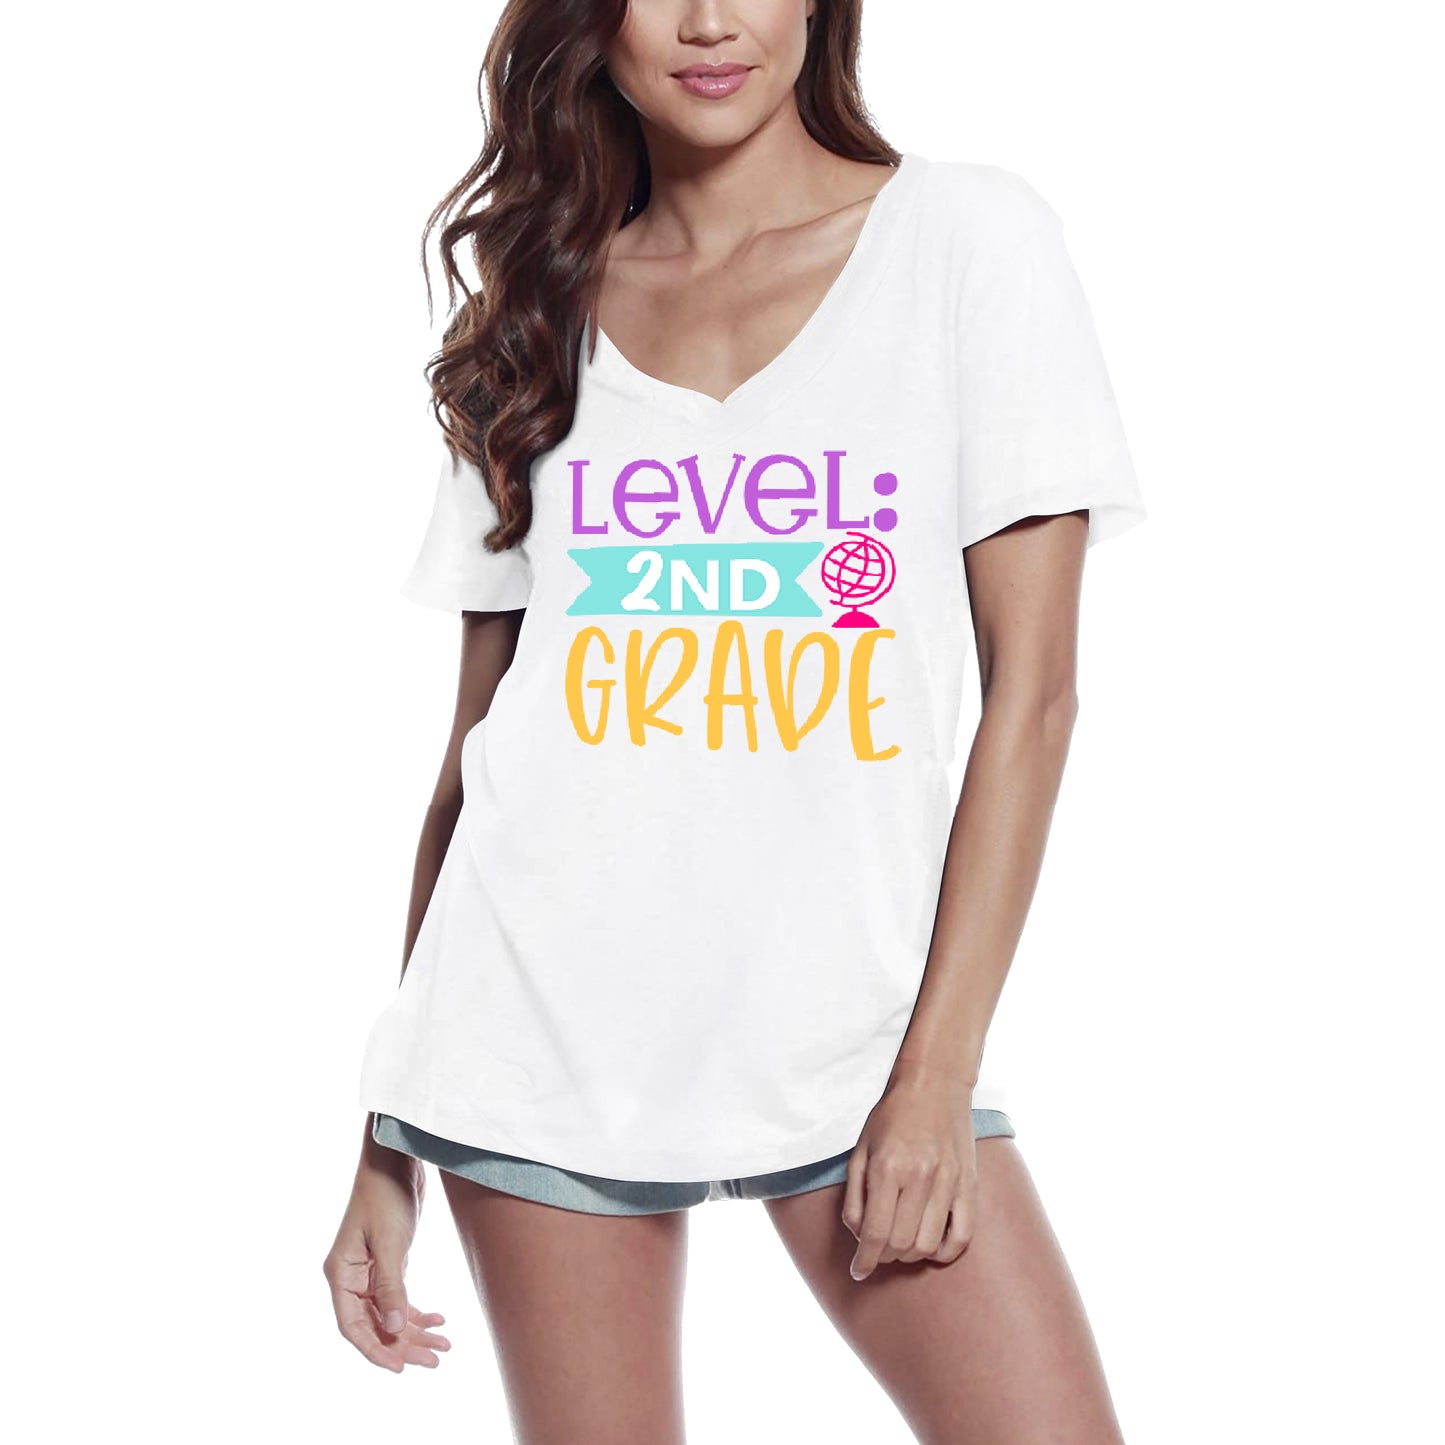 ULTRABASIC Women's T-Shirt Level 2nd Grade - Short Sleeve Tee Shirt Tops